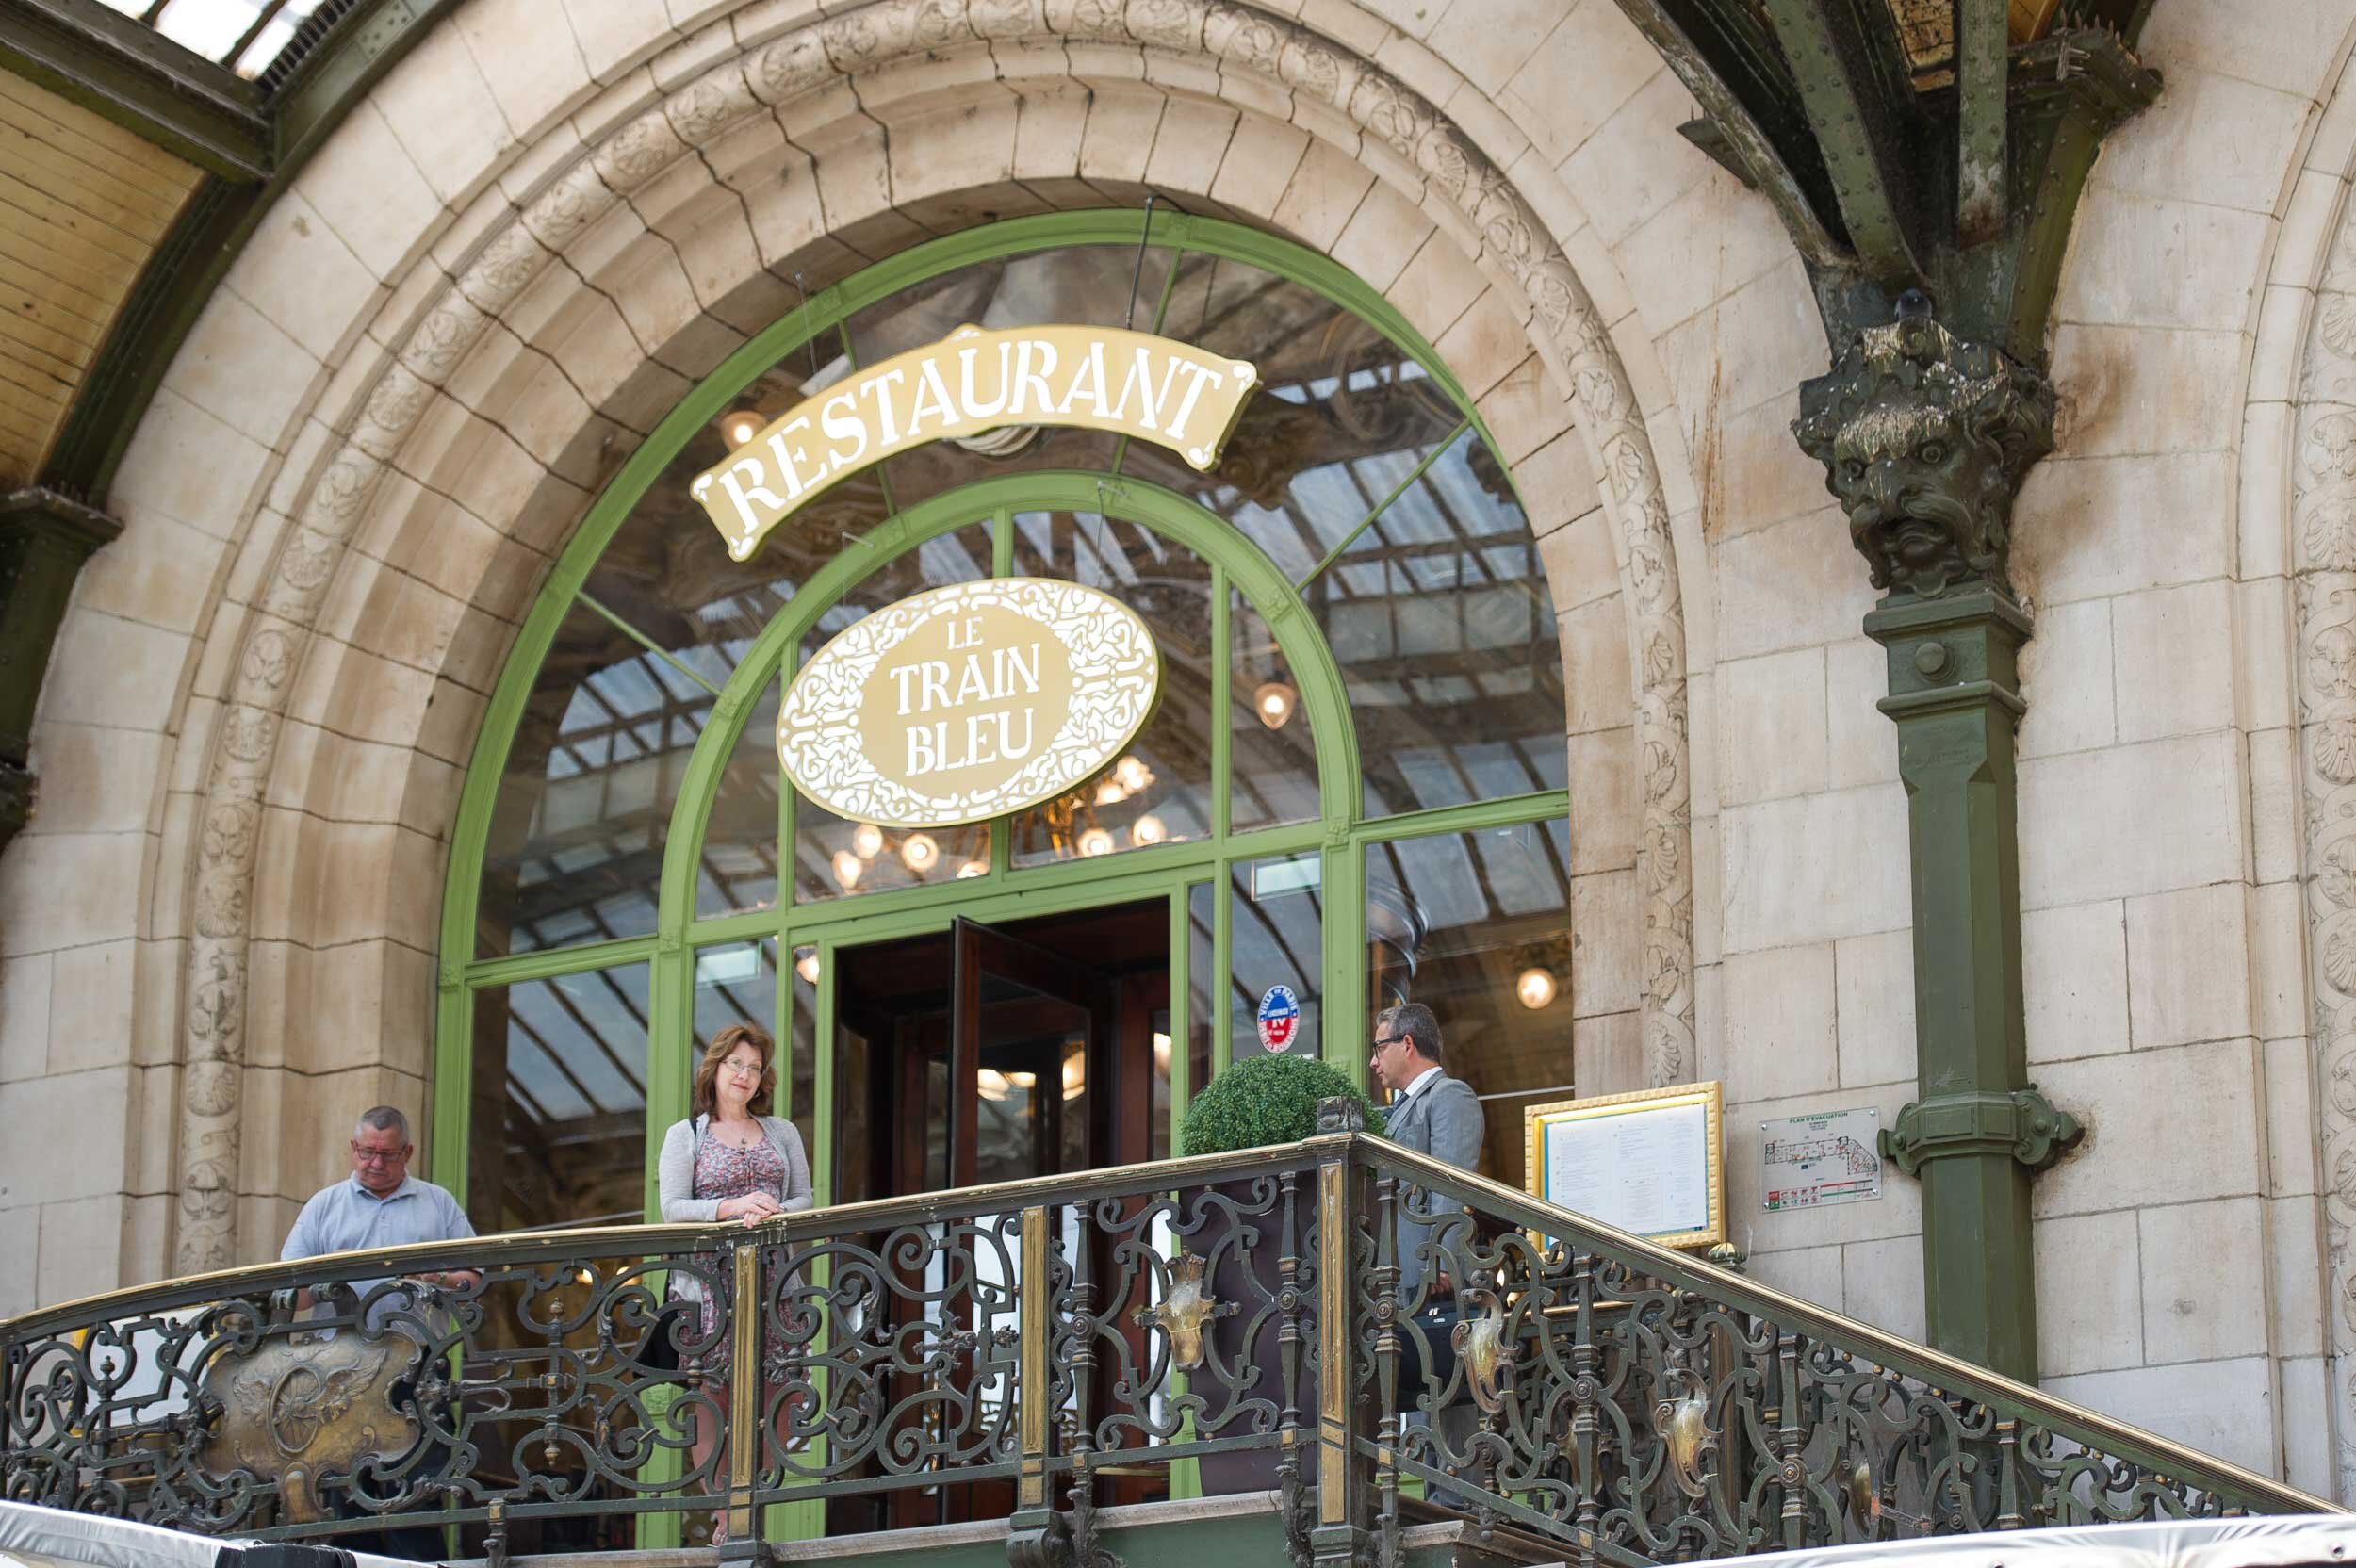 Le Train Bleu Restaurant in Paris — French Views